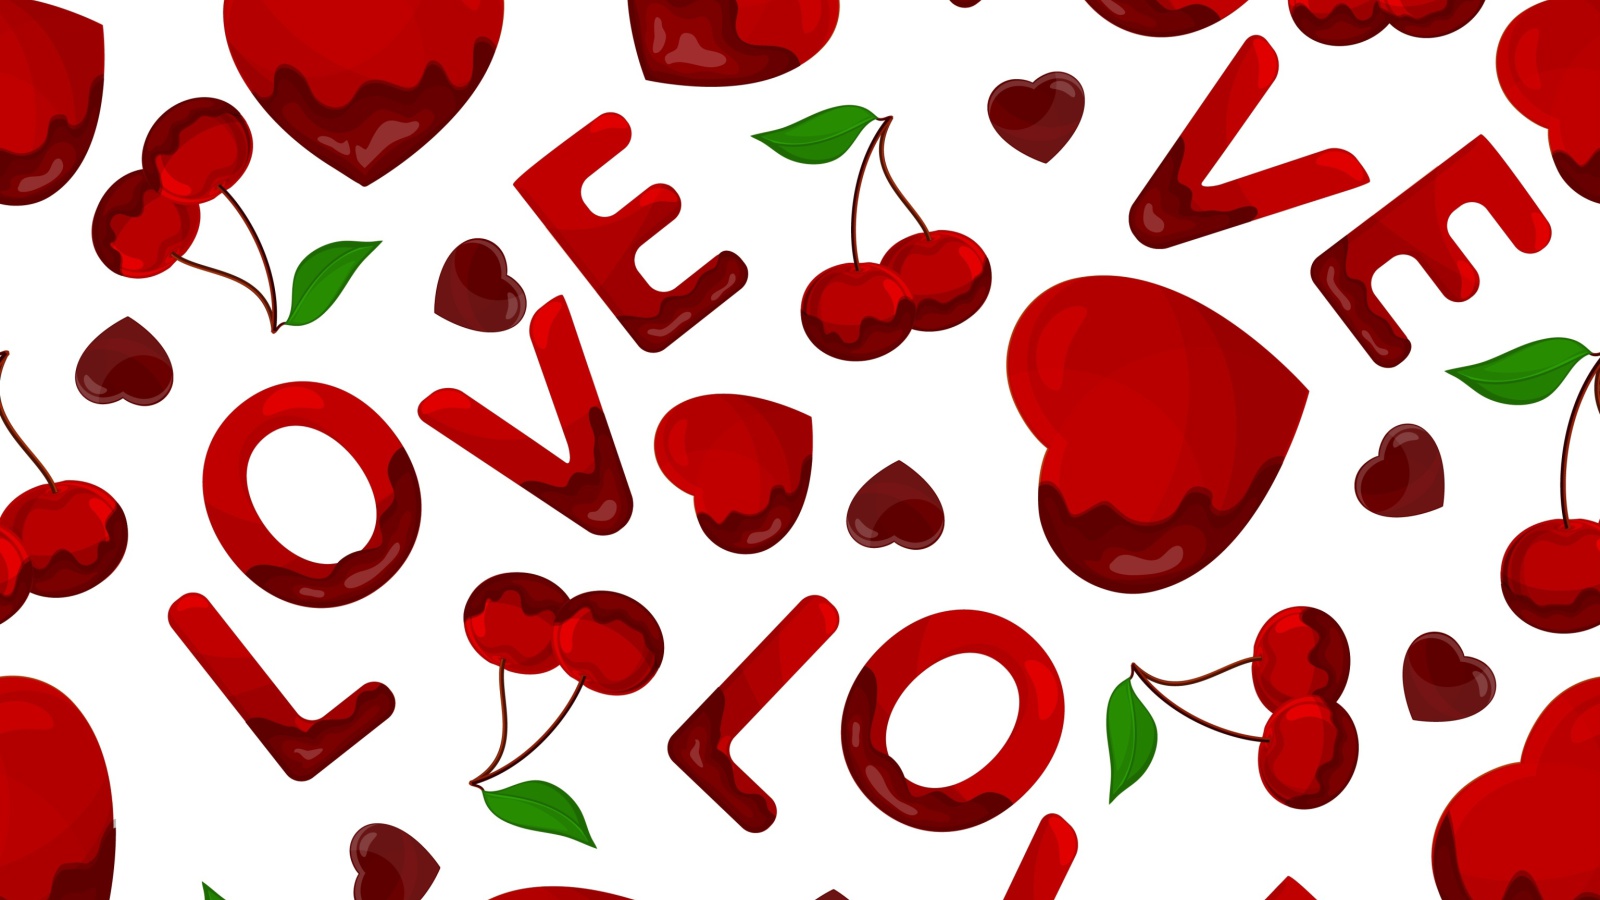 Обои Love Cherries and Hearts 1600x900